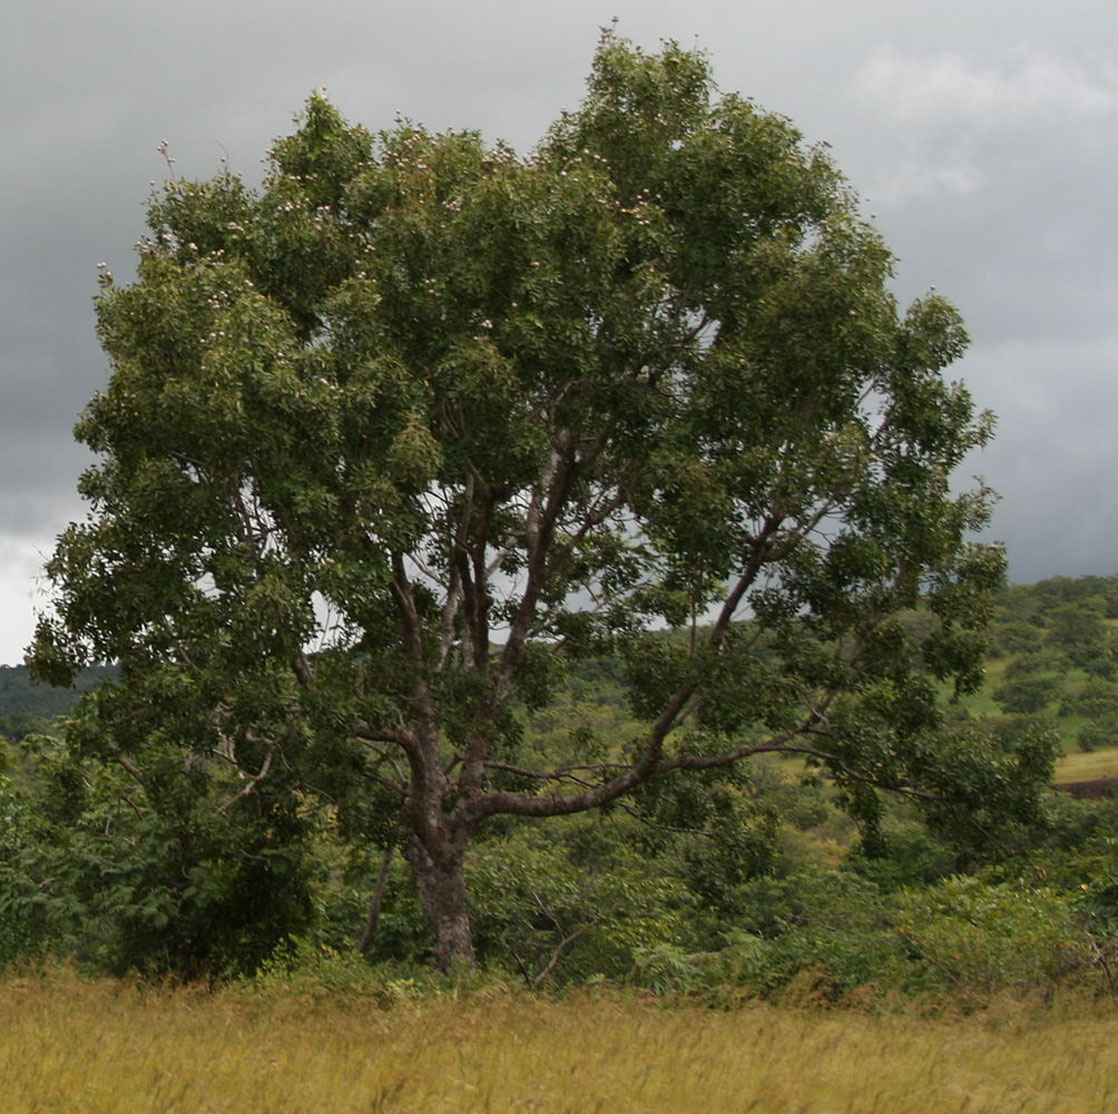 Khaya tree